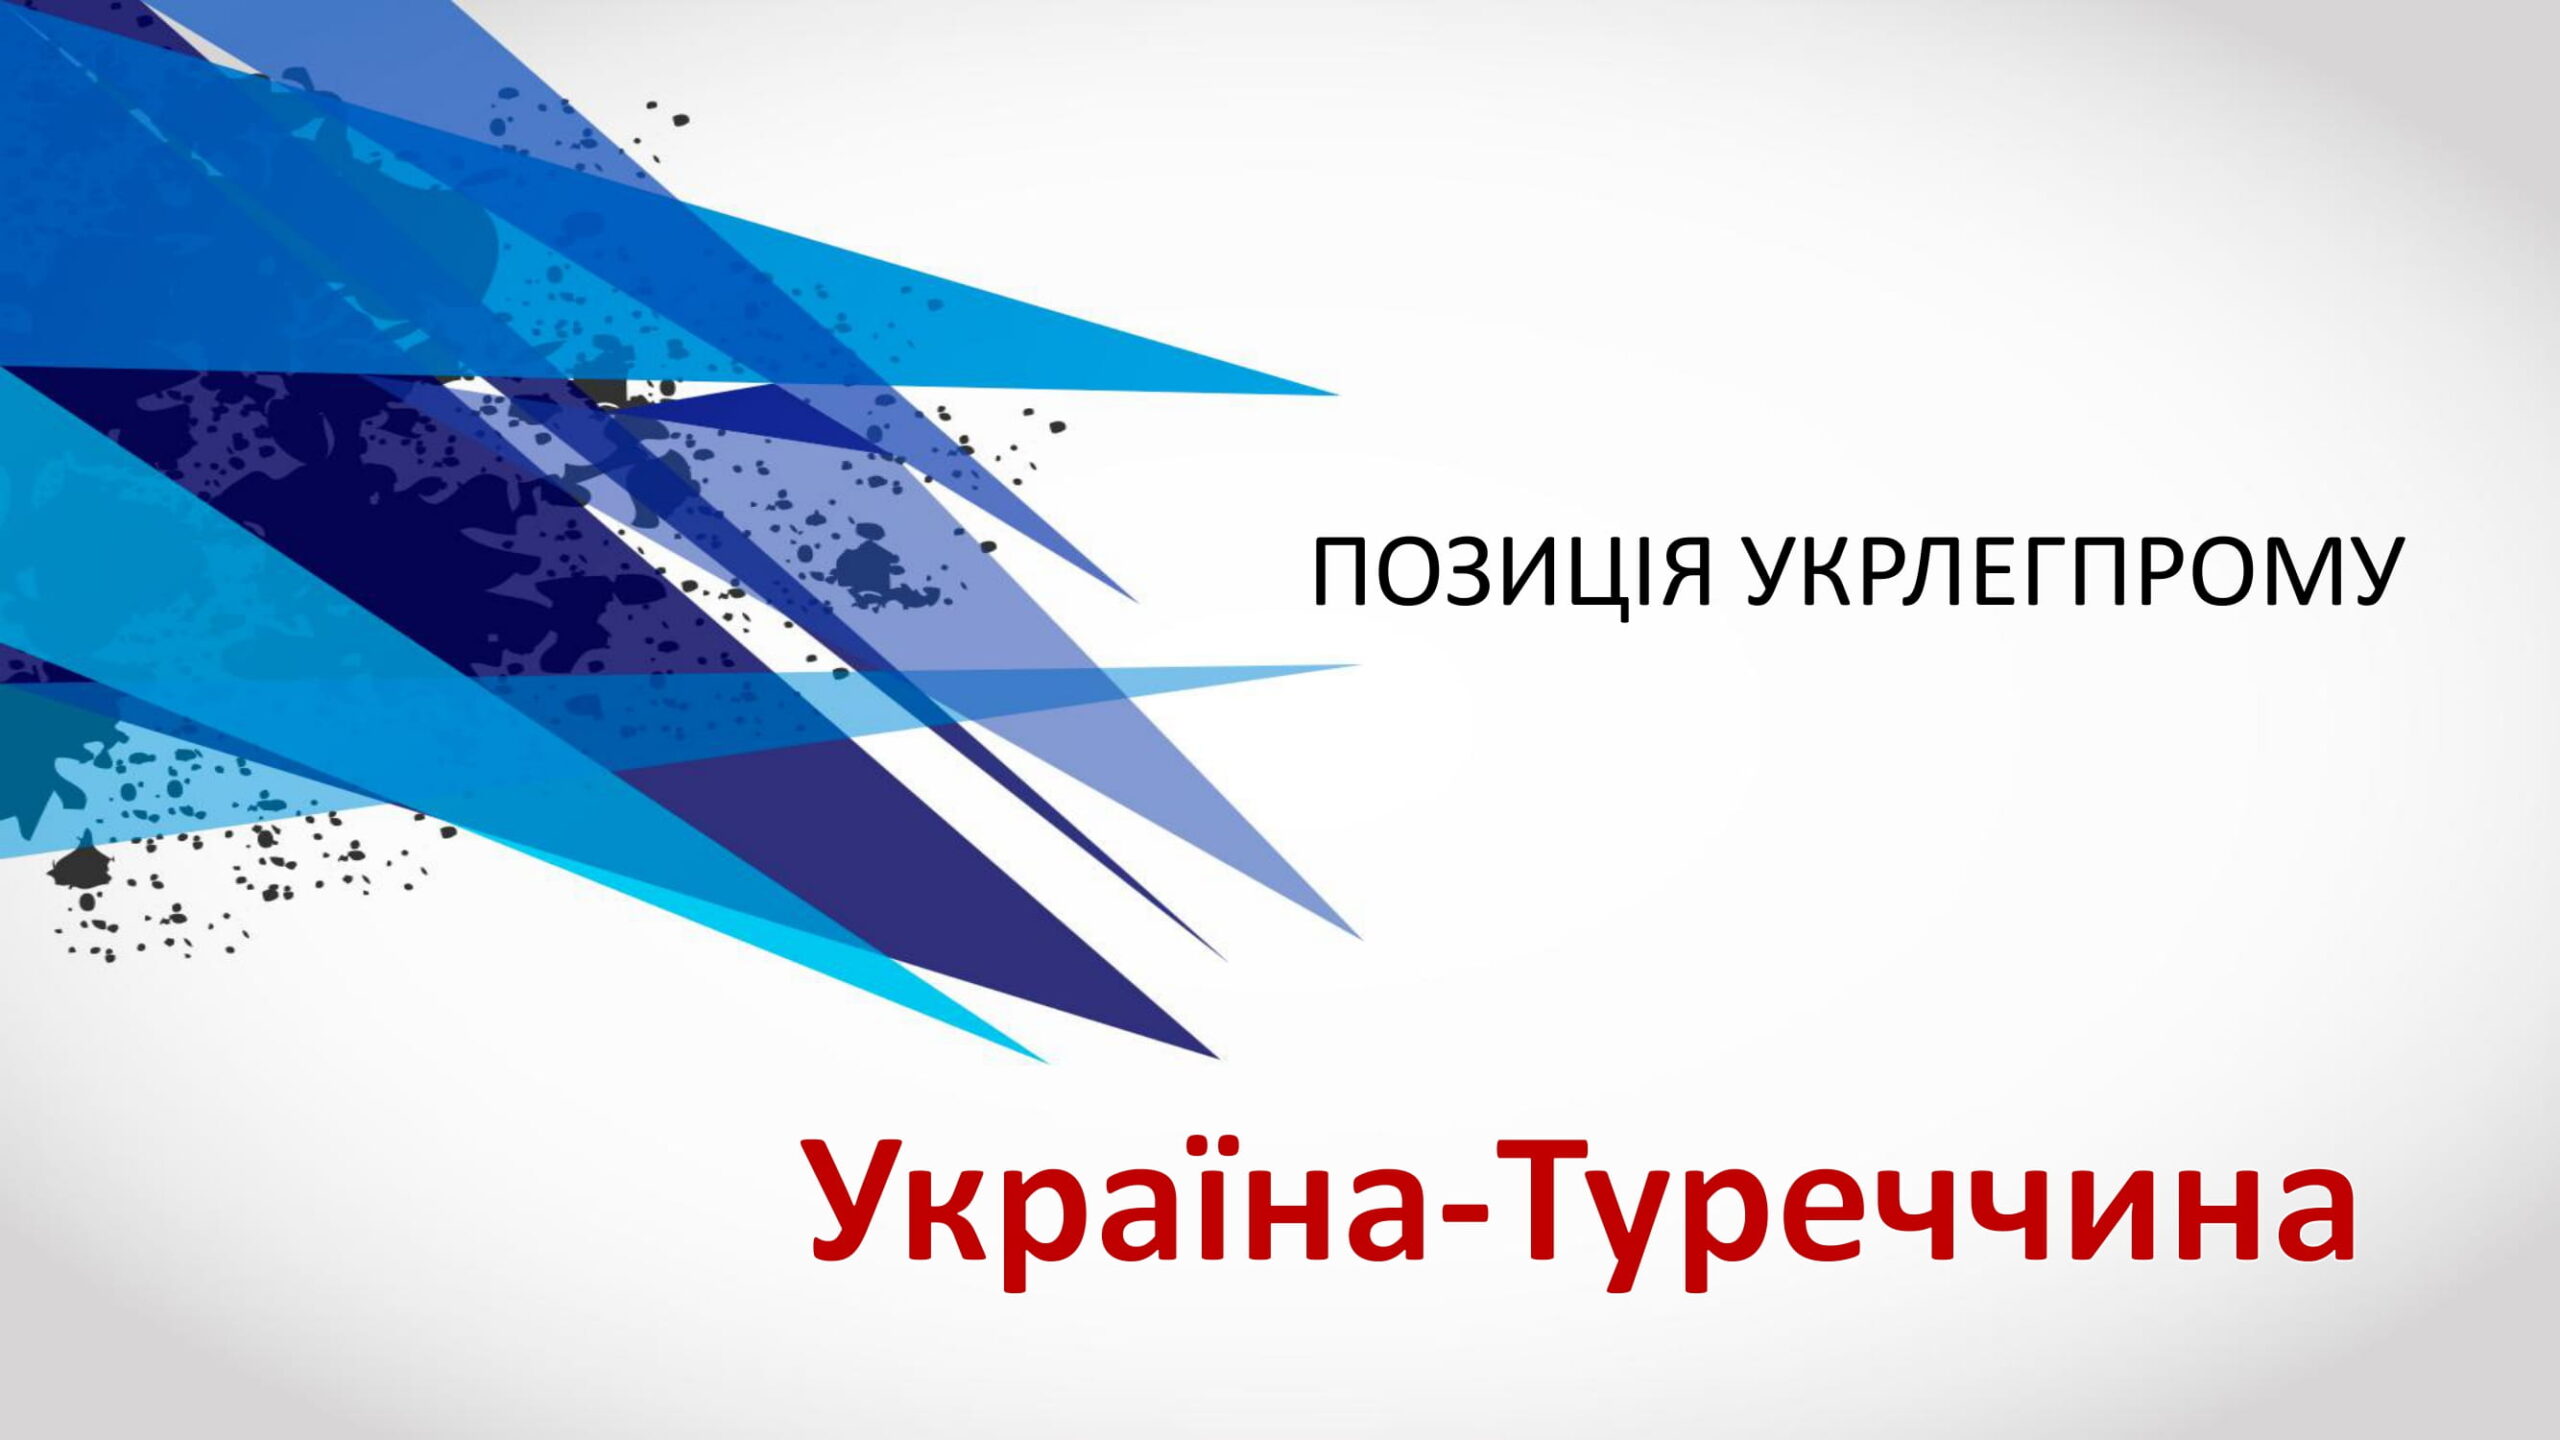 Офіційна позиція Укрлегпрому Україна-Туреччина